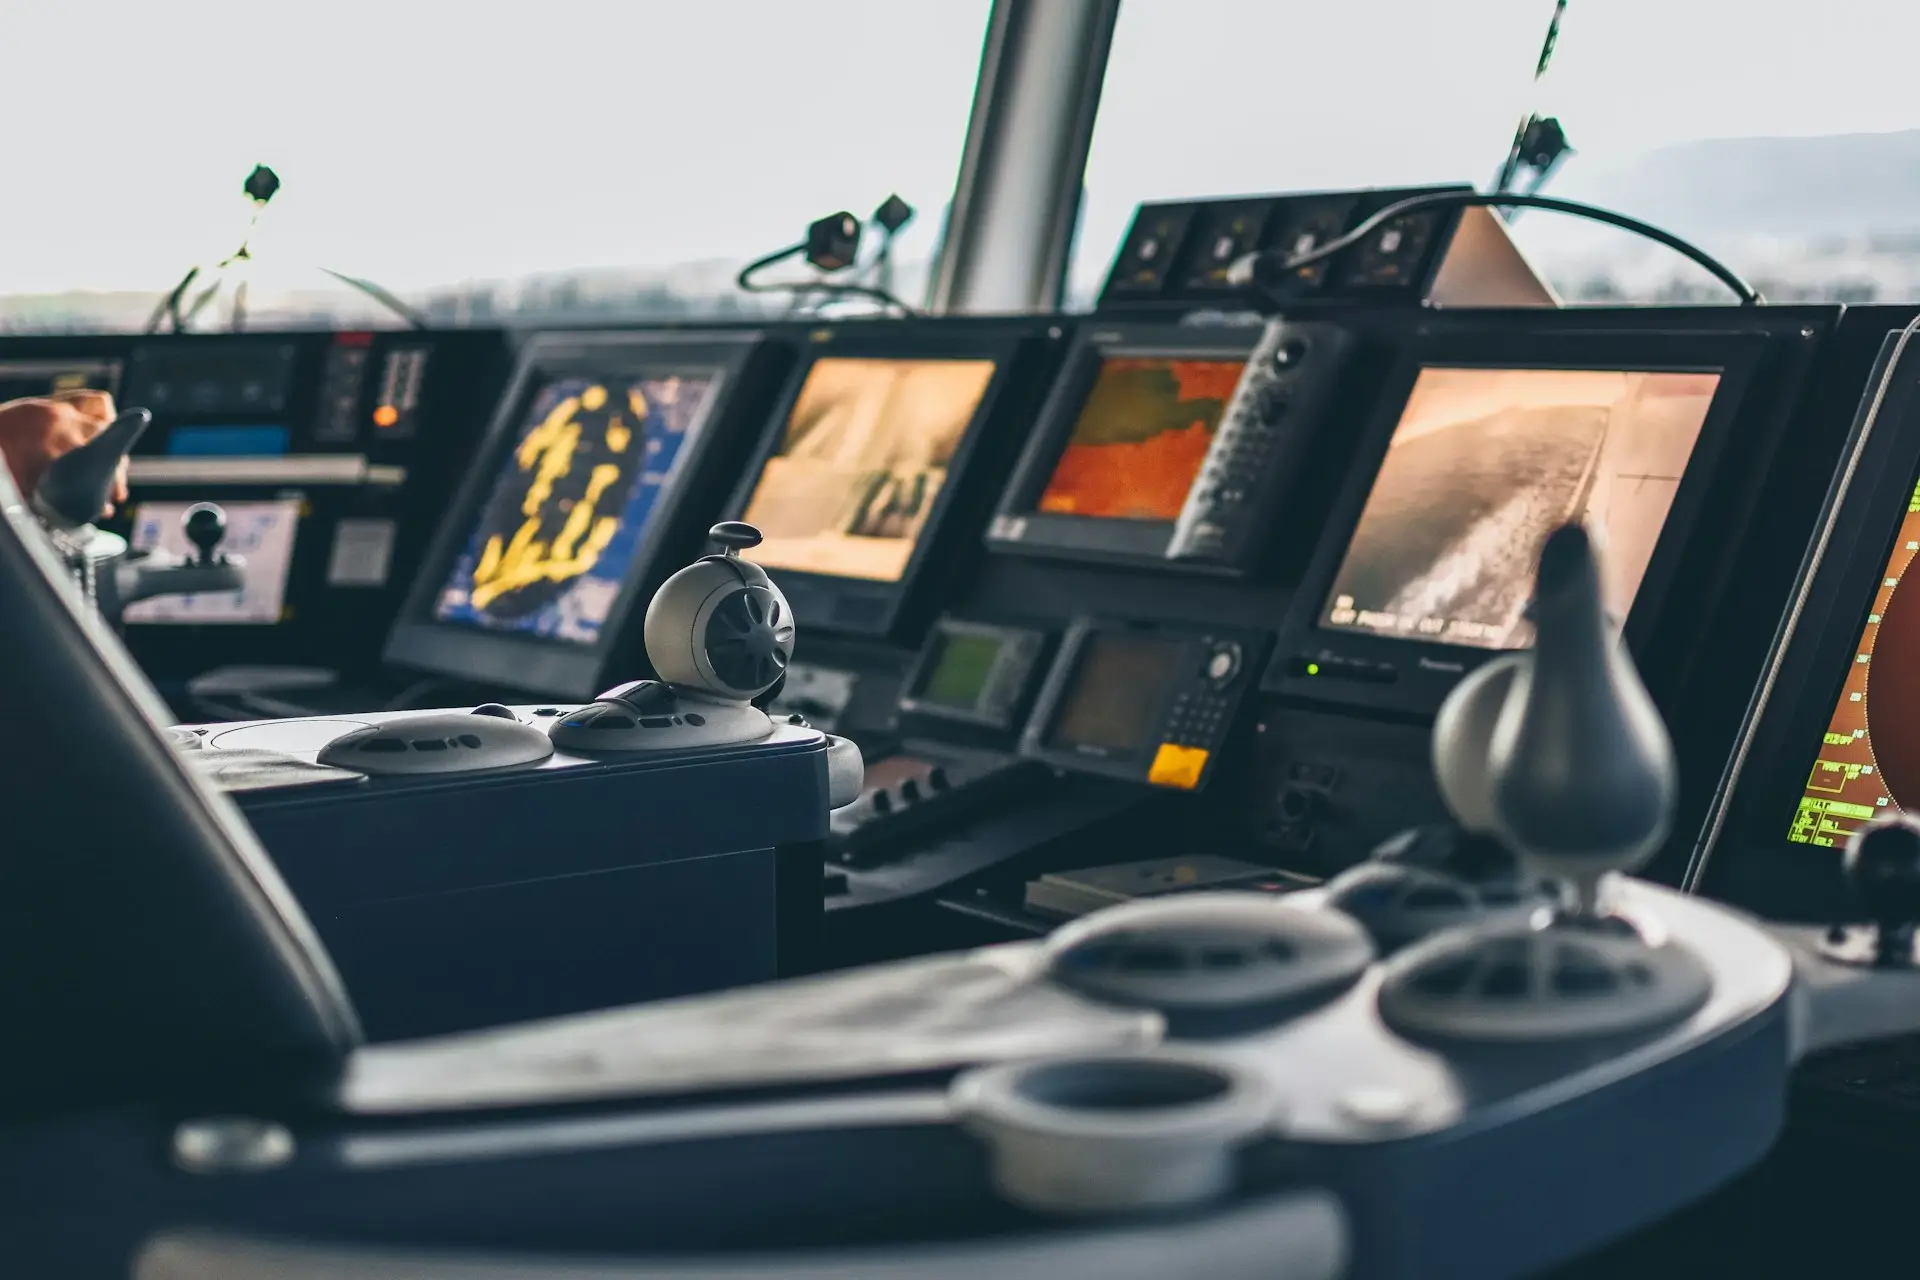 Kokpit nowoczesnego statku przedstawiający szereg elektronicznych paneli nawigacyjnych i kontrolnych z różnymi ekranami, pokrętłami i mechanizmami sterującymi.